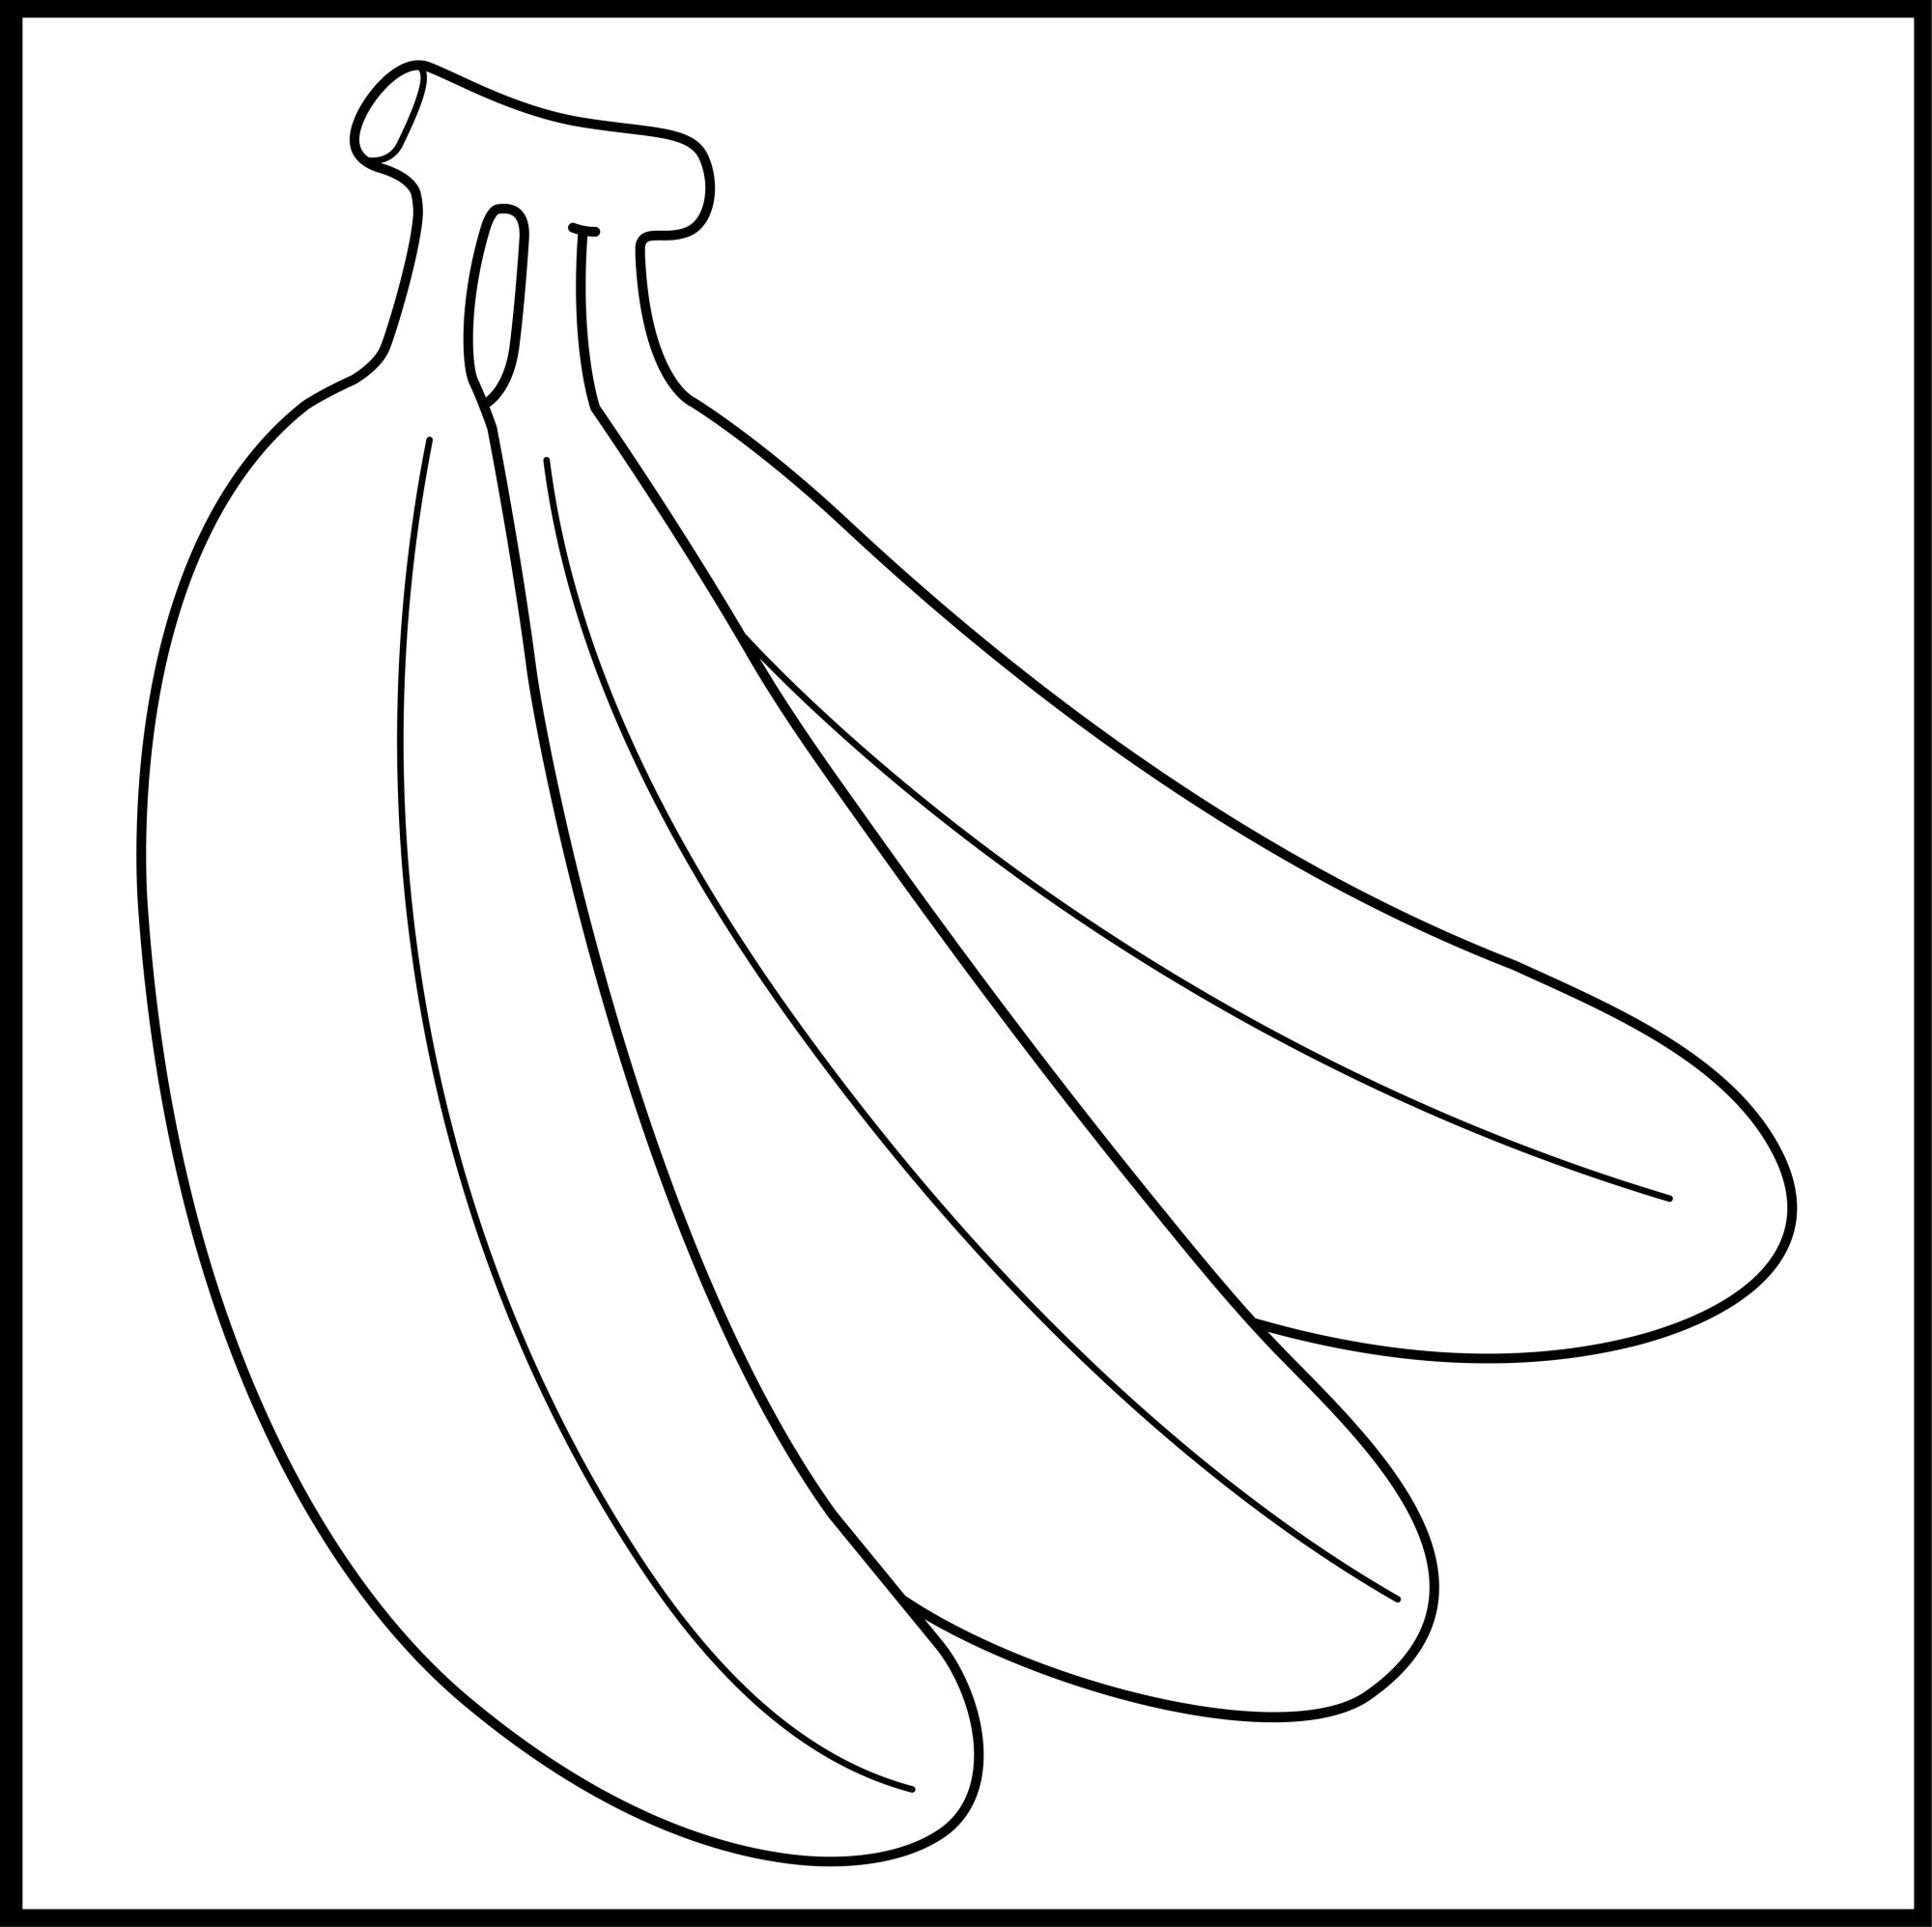 Раскраска для детей: три банана на ветке